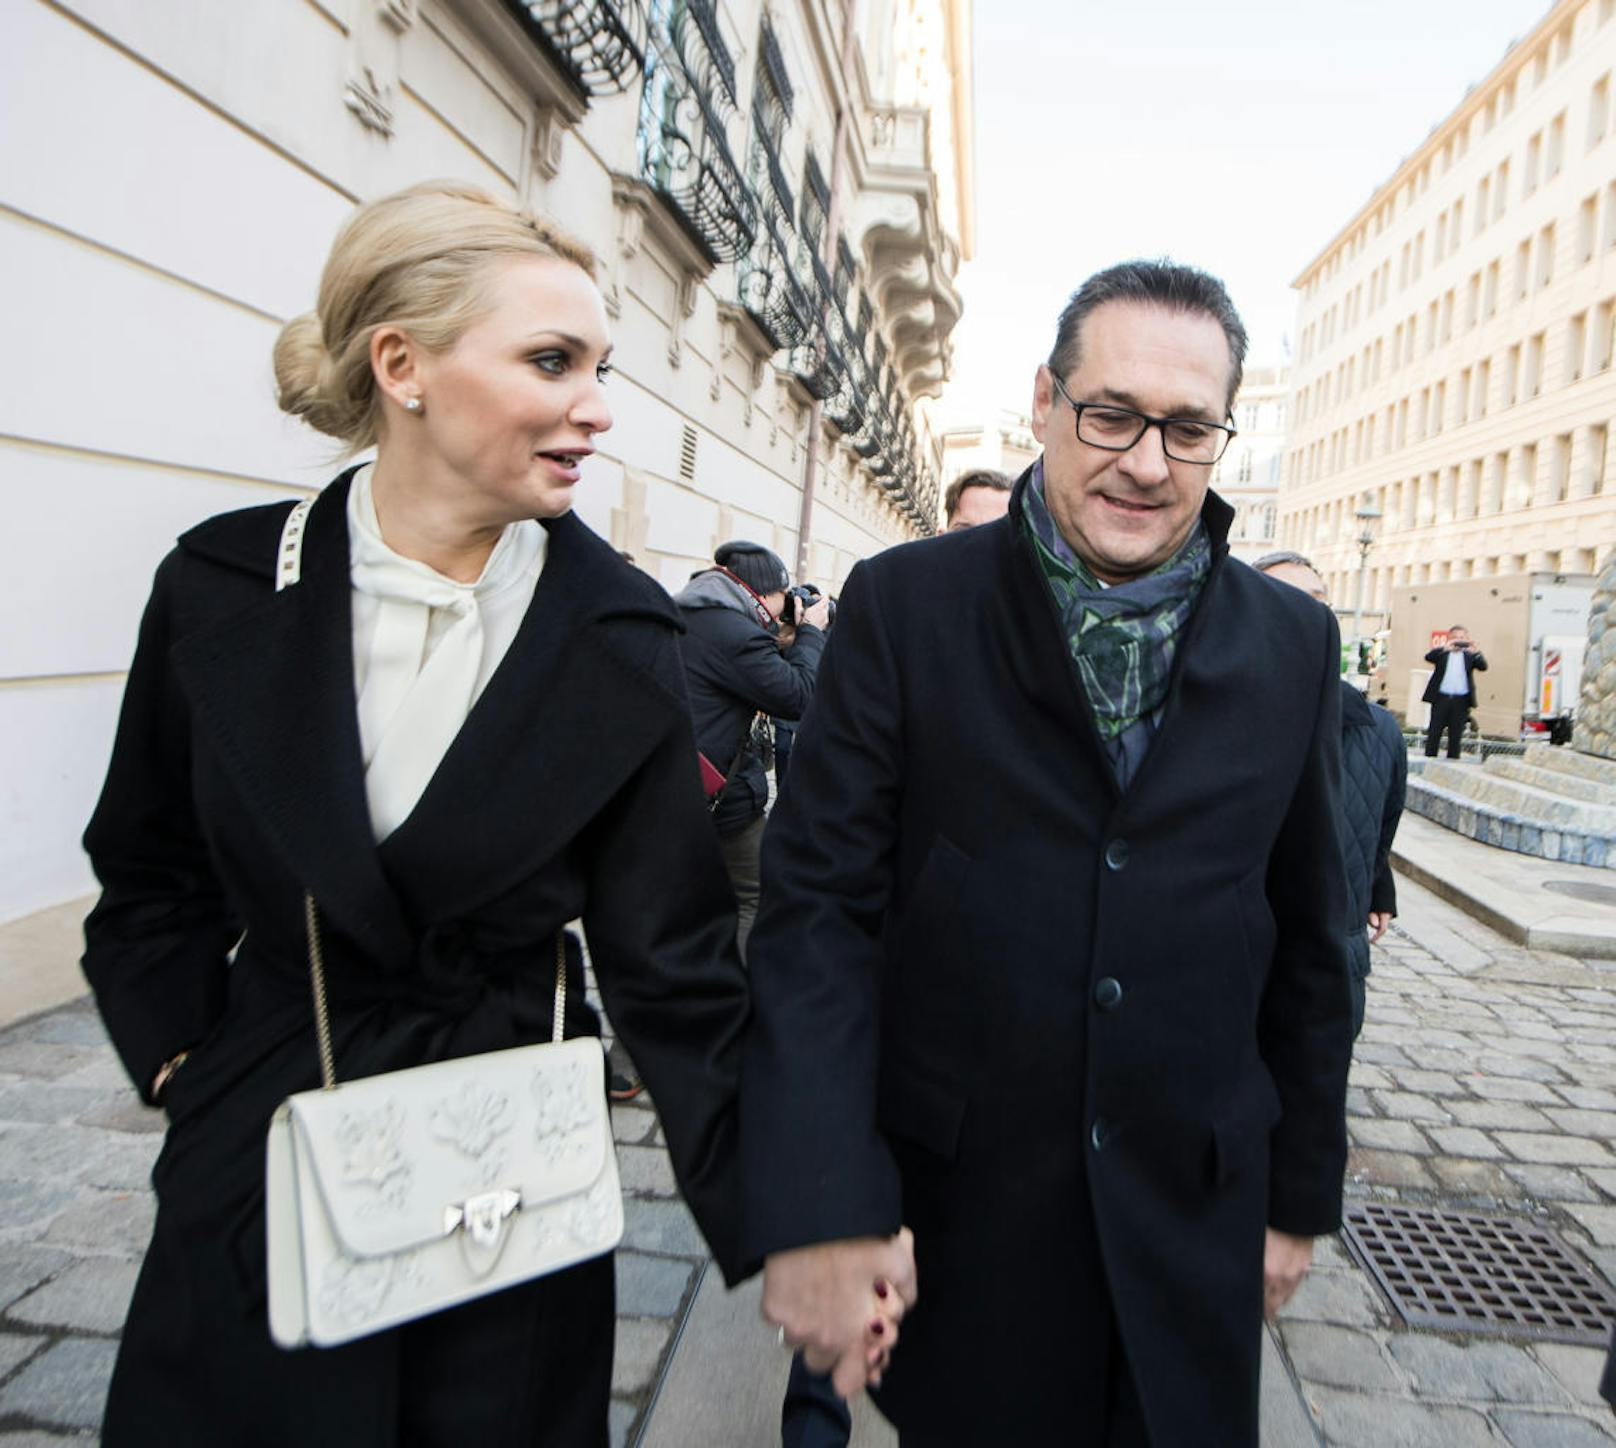 FPÖ-Chef Heinz-Christian Strache mit seiner Frau Philippa.